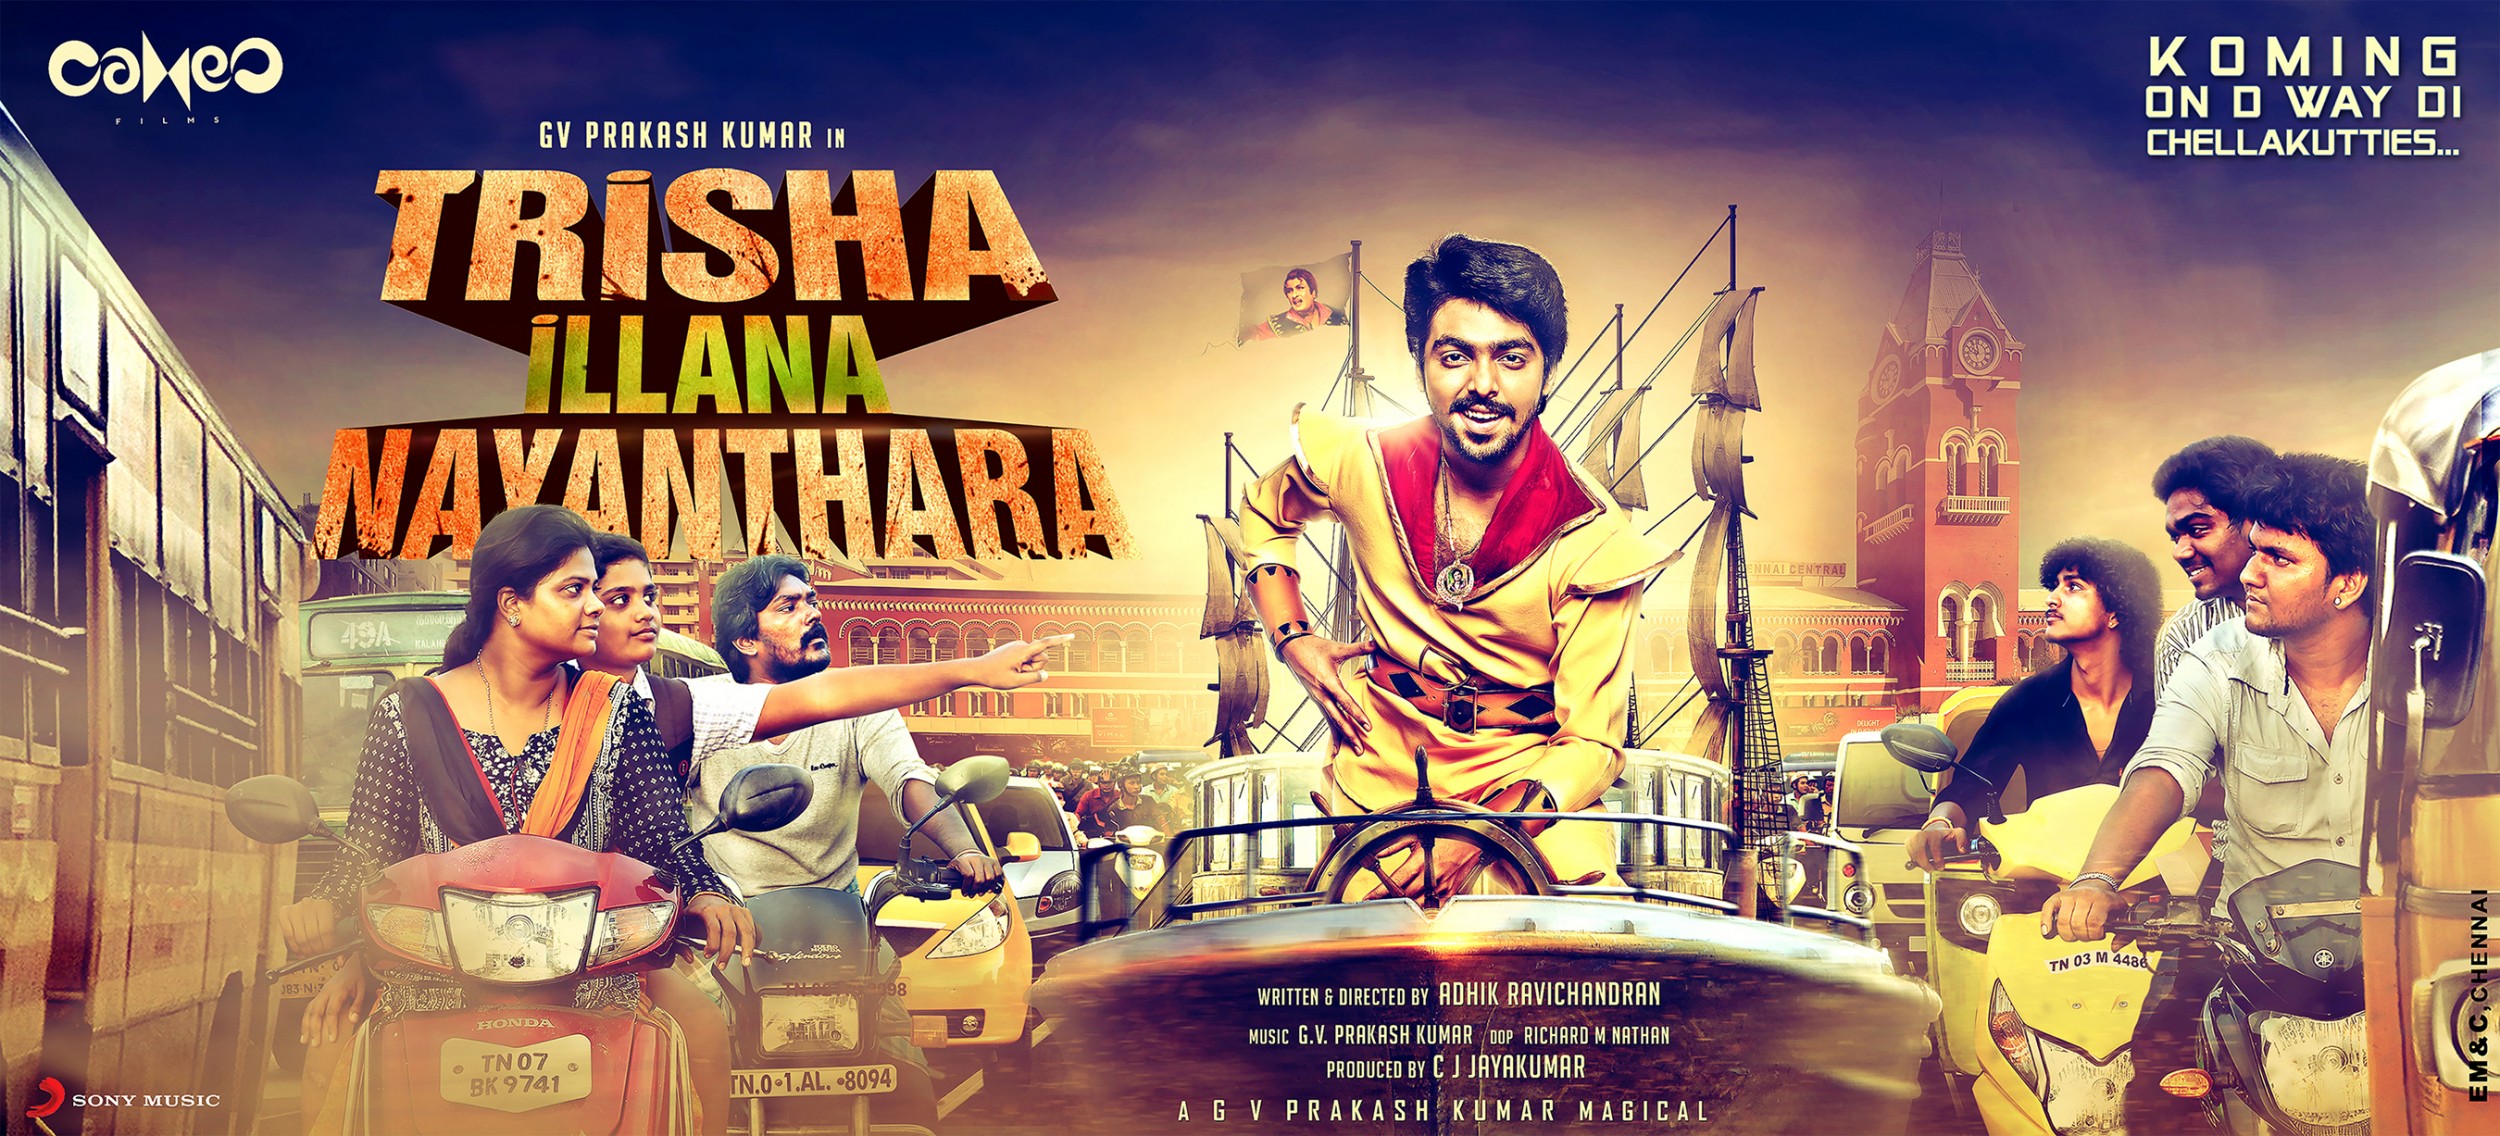 Mega Sized Movie Poster Image for Trisha Illana Nayanthara (#3 of 4)